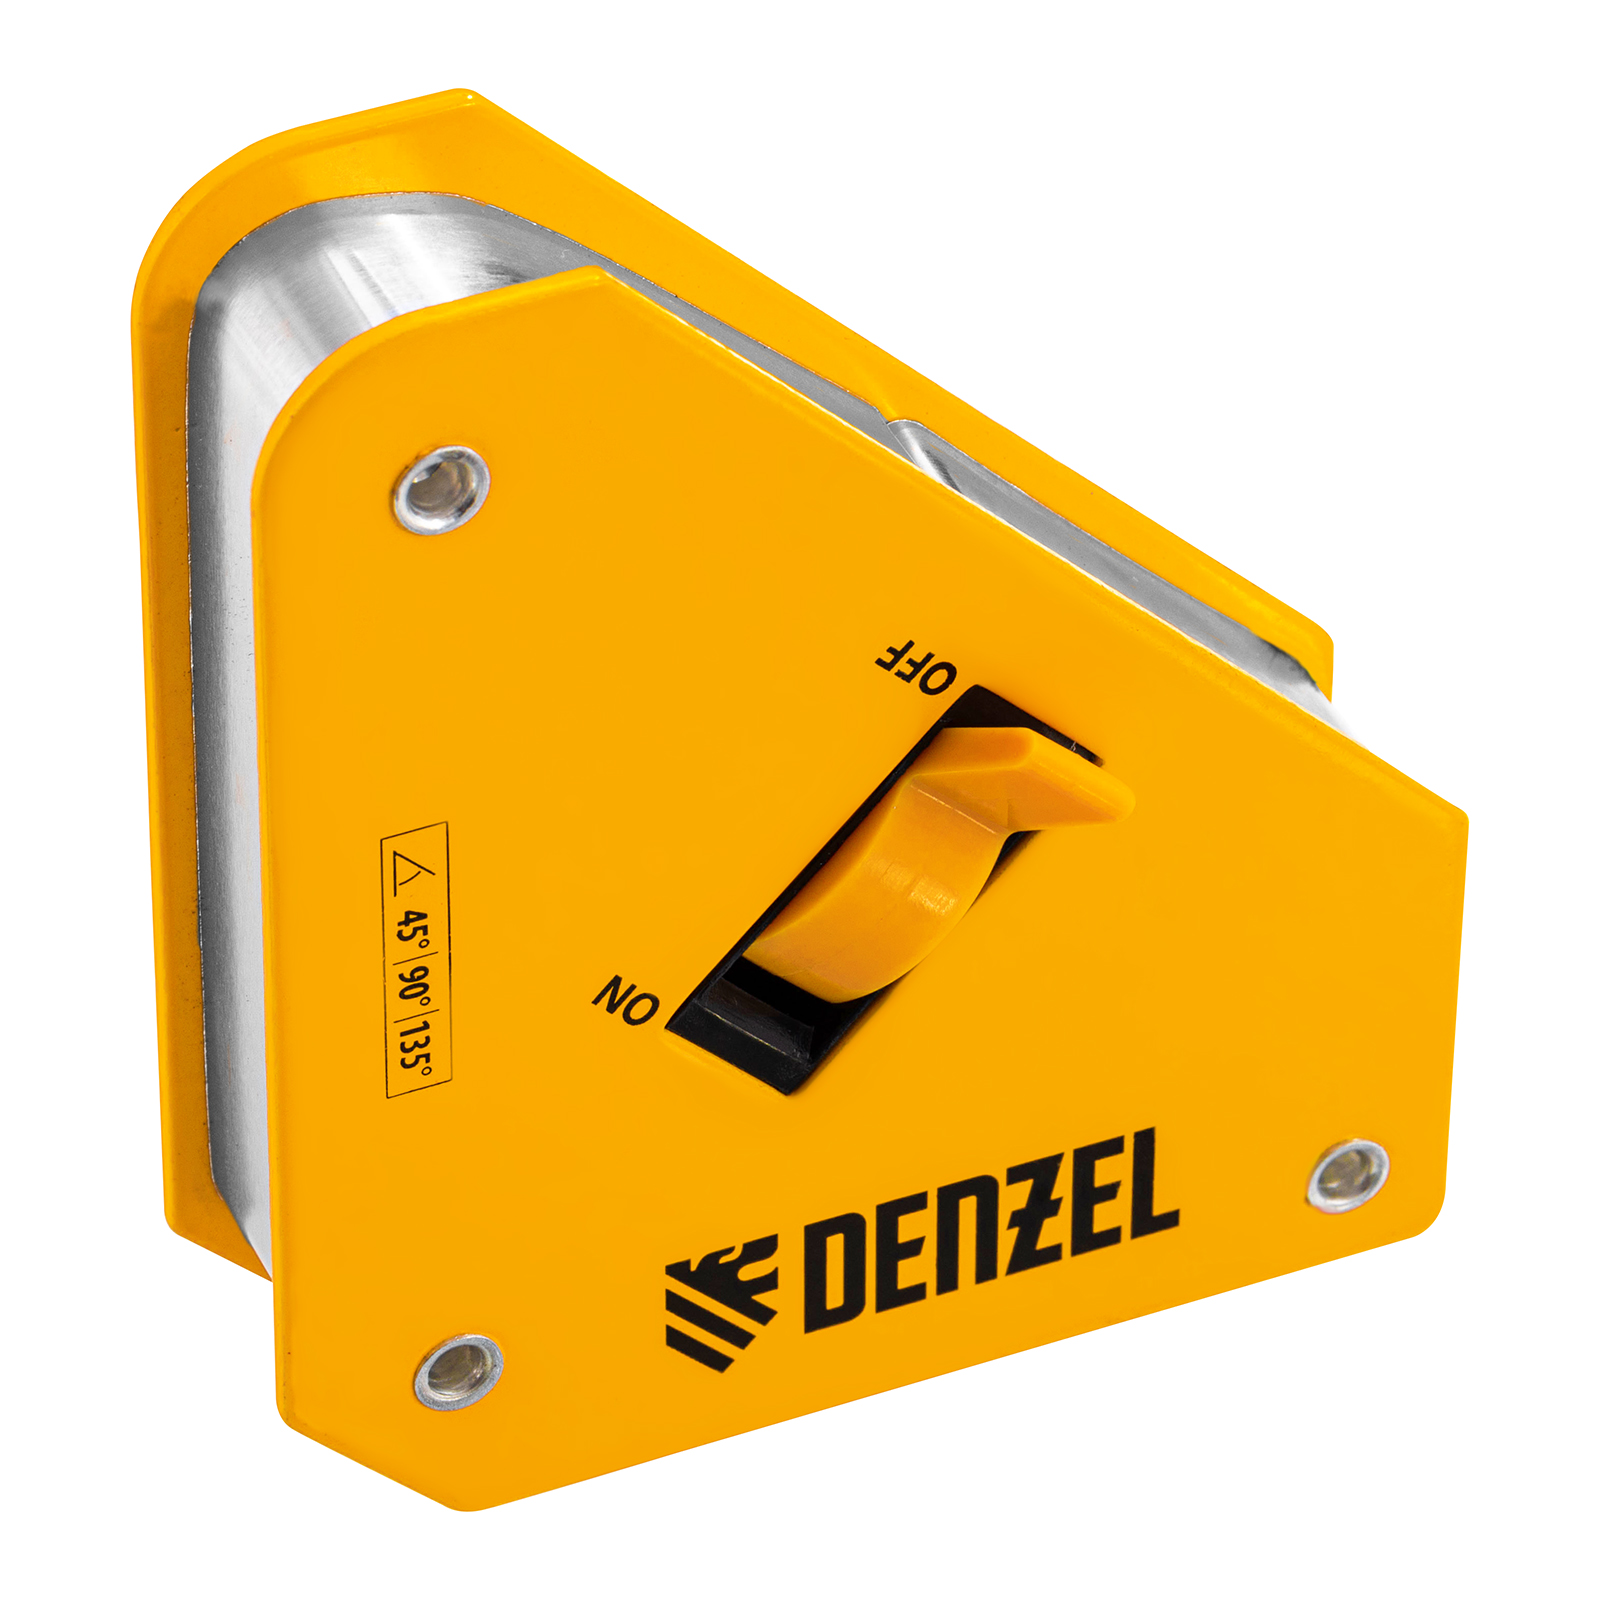 Фиксатор магнитный отключаемый для сварочных работ DENZEL усилие 30 LB, 45х90 град. 97561 фиксатор магнитный отключаемый для сварочных работ denzel усилие 30 lb 45х90х135 гр 97563